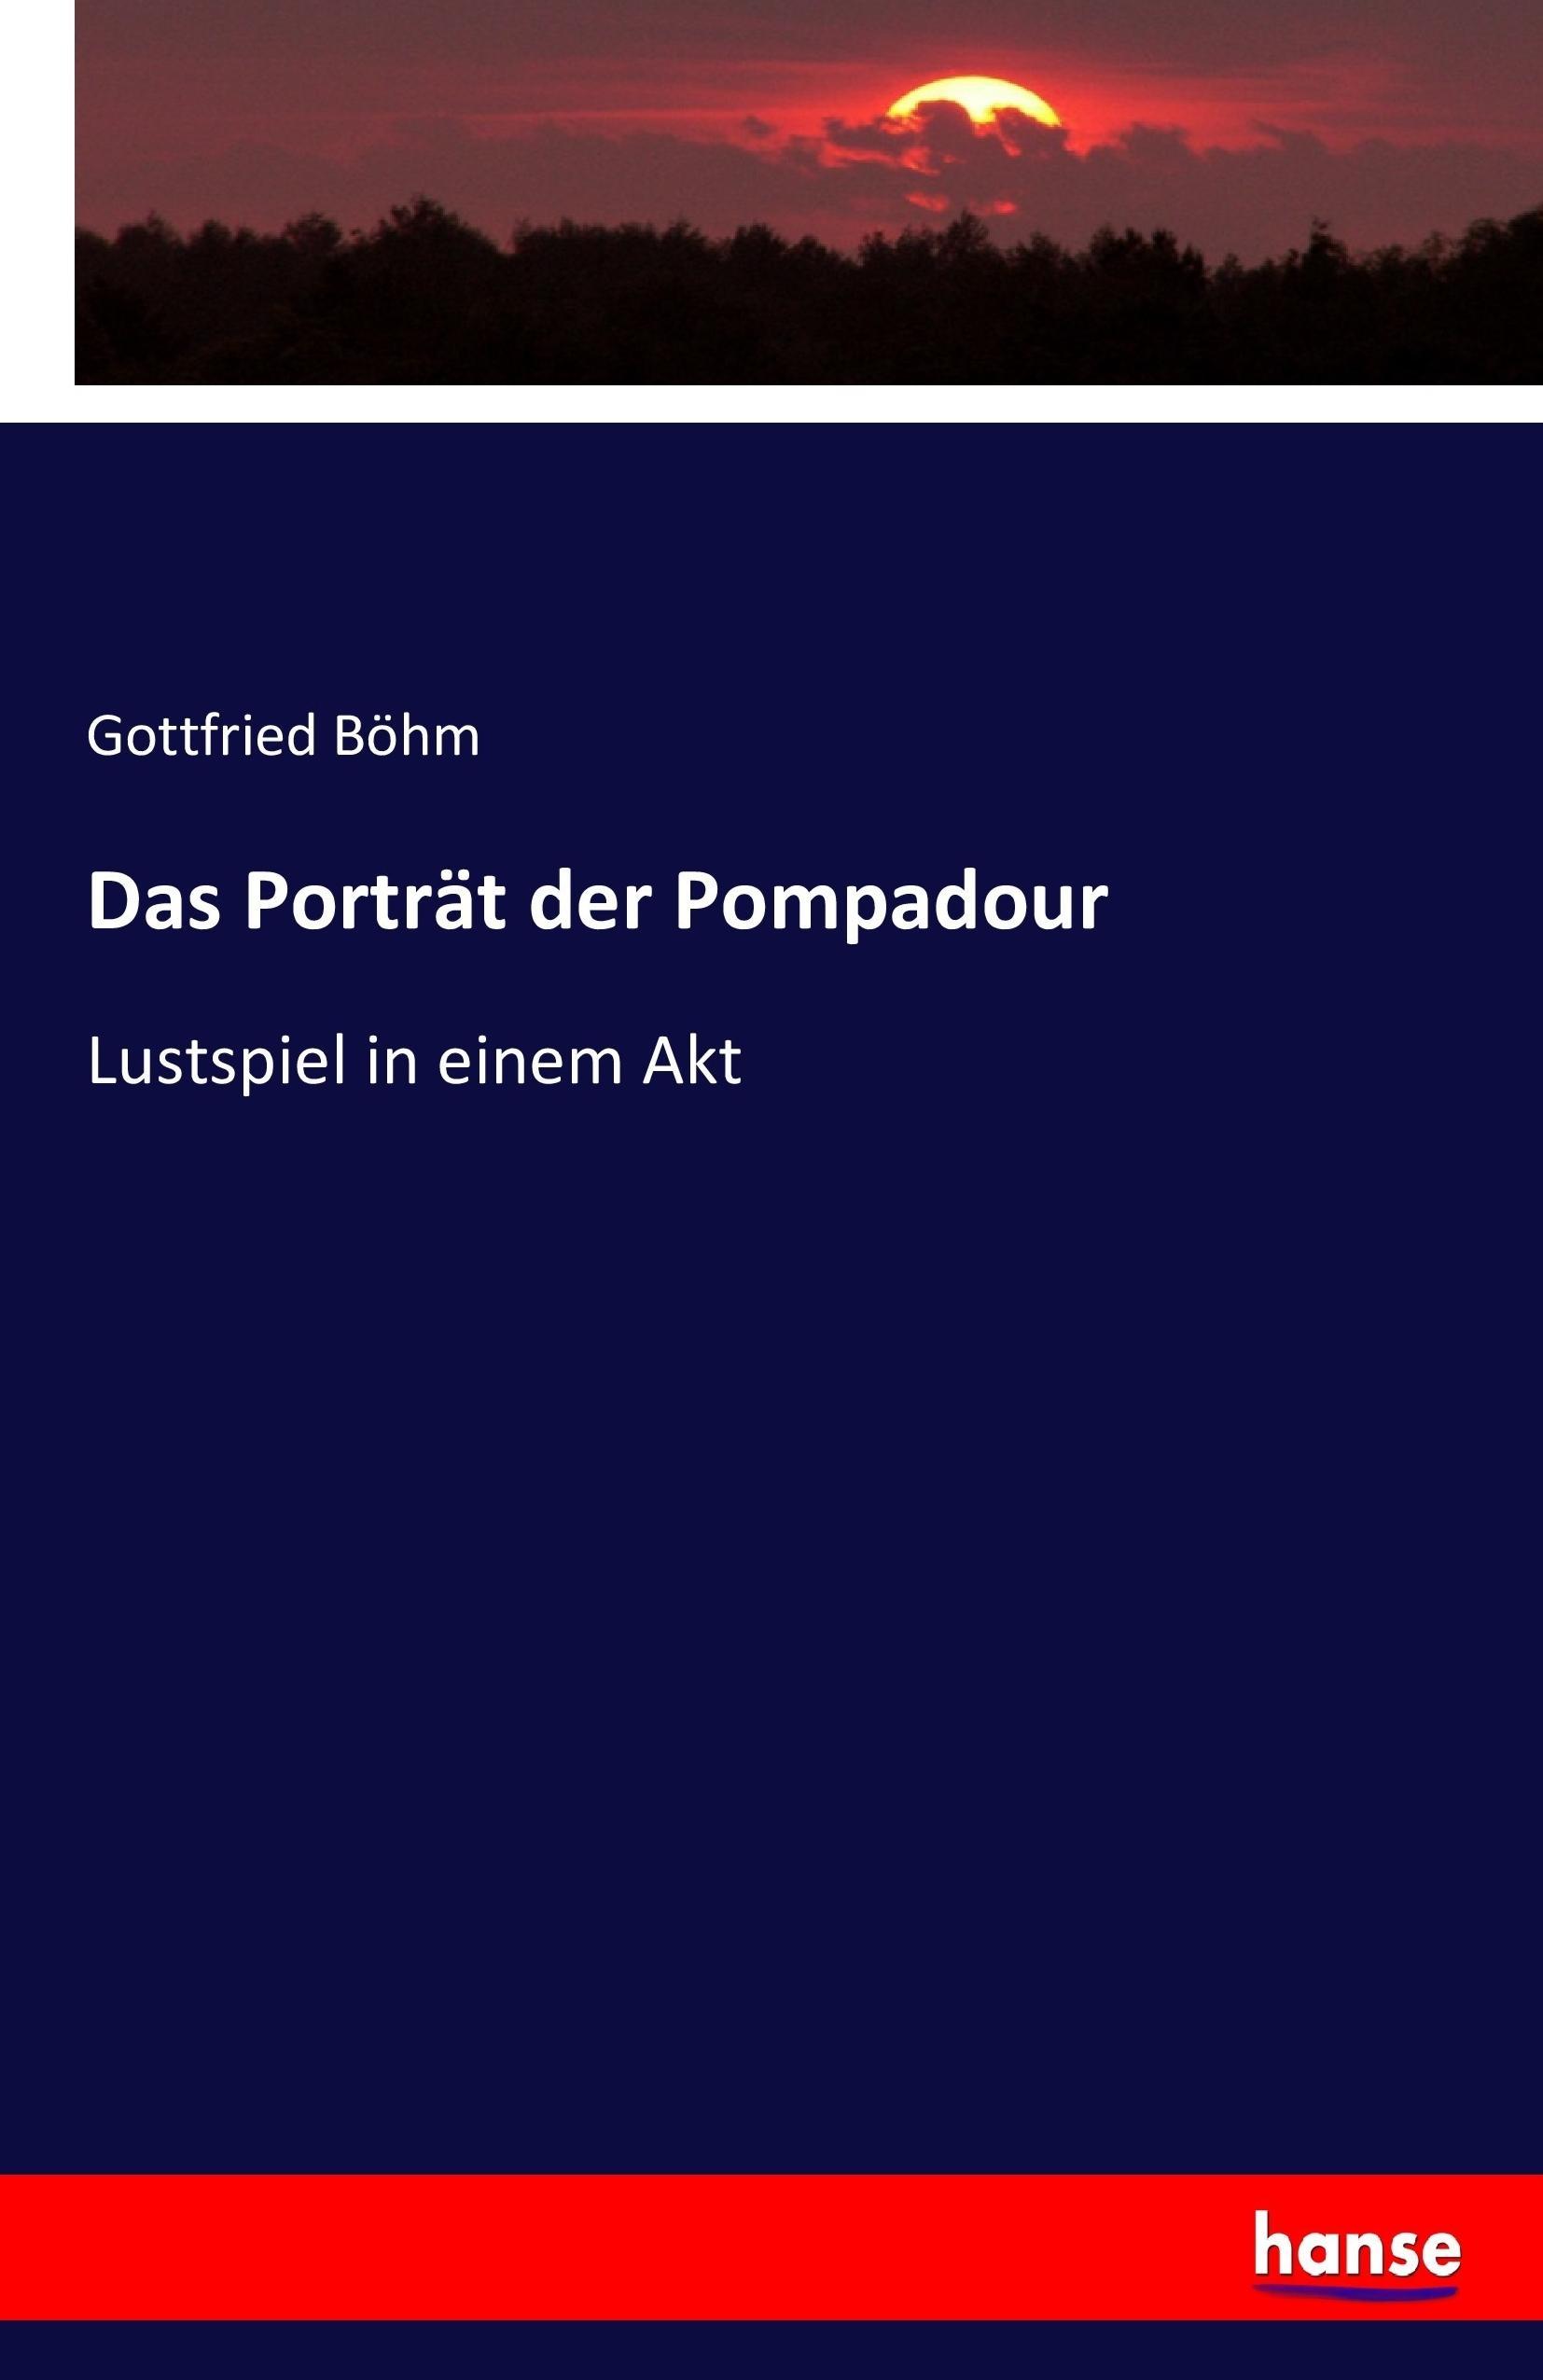 Das Porträt der Pompadour | Lustspiel in einem Akt | Gottfried Böhm | Taschenbuch | Paperback | 60 S. | Deutsch | 2017 | hansebooks | EAN 9783743406162 - Böhm, Gottfried